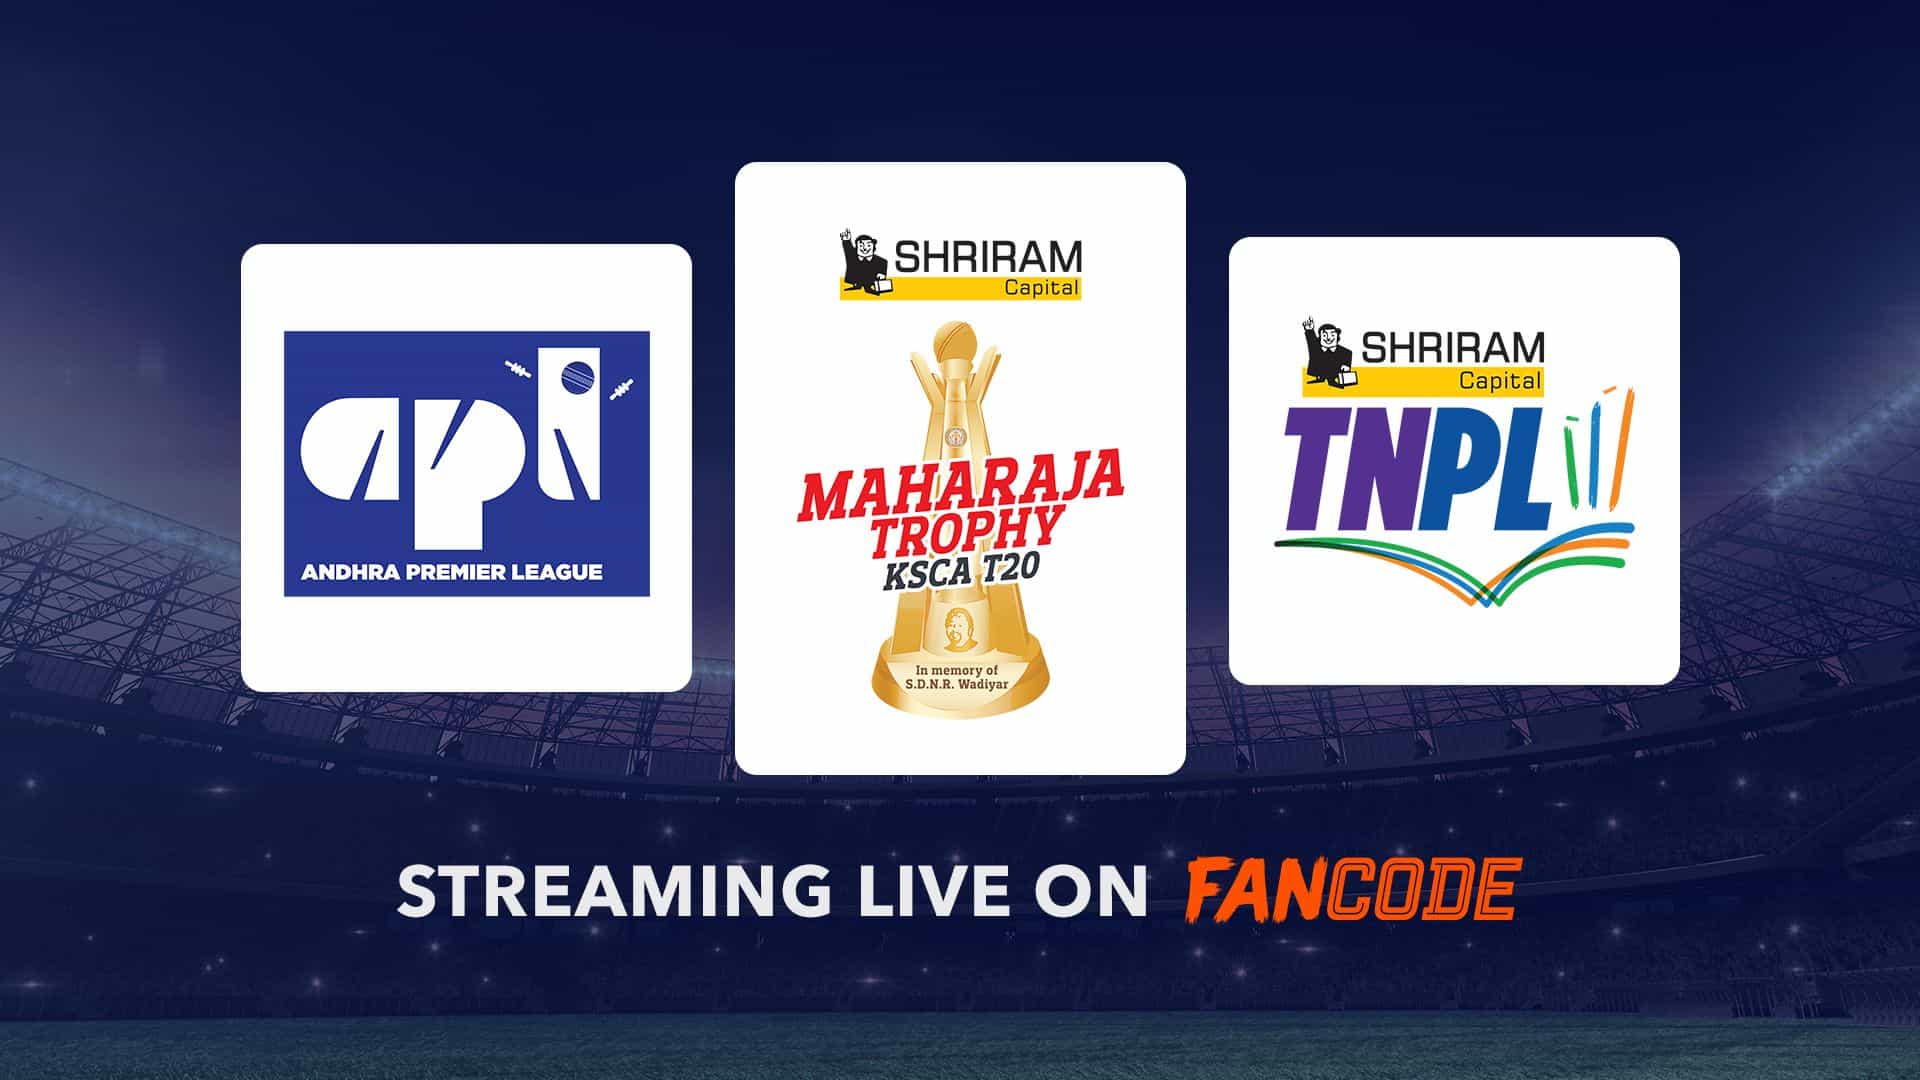 Maharaja Trophy KSCA T20 Streaming Rights